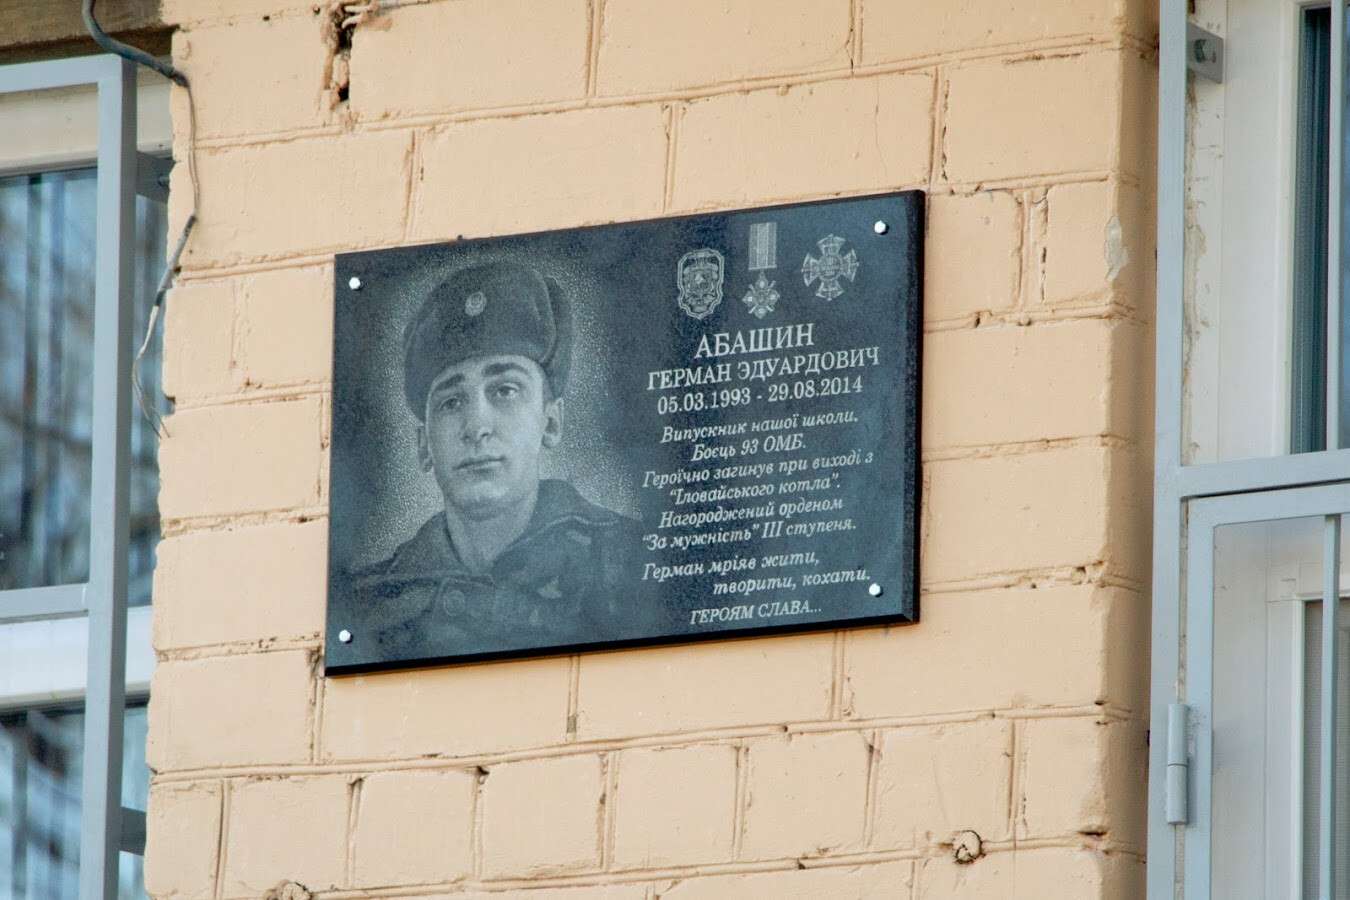 В Днепре открыли памятную доску погибшему бойцу Герману Абашину: фото